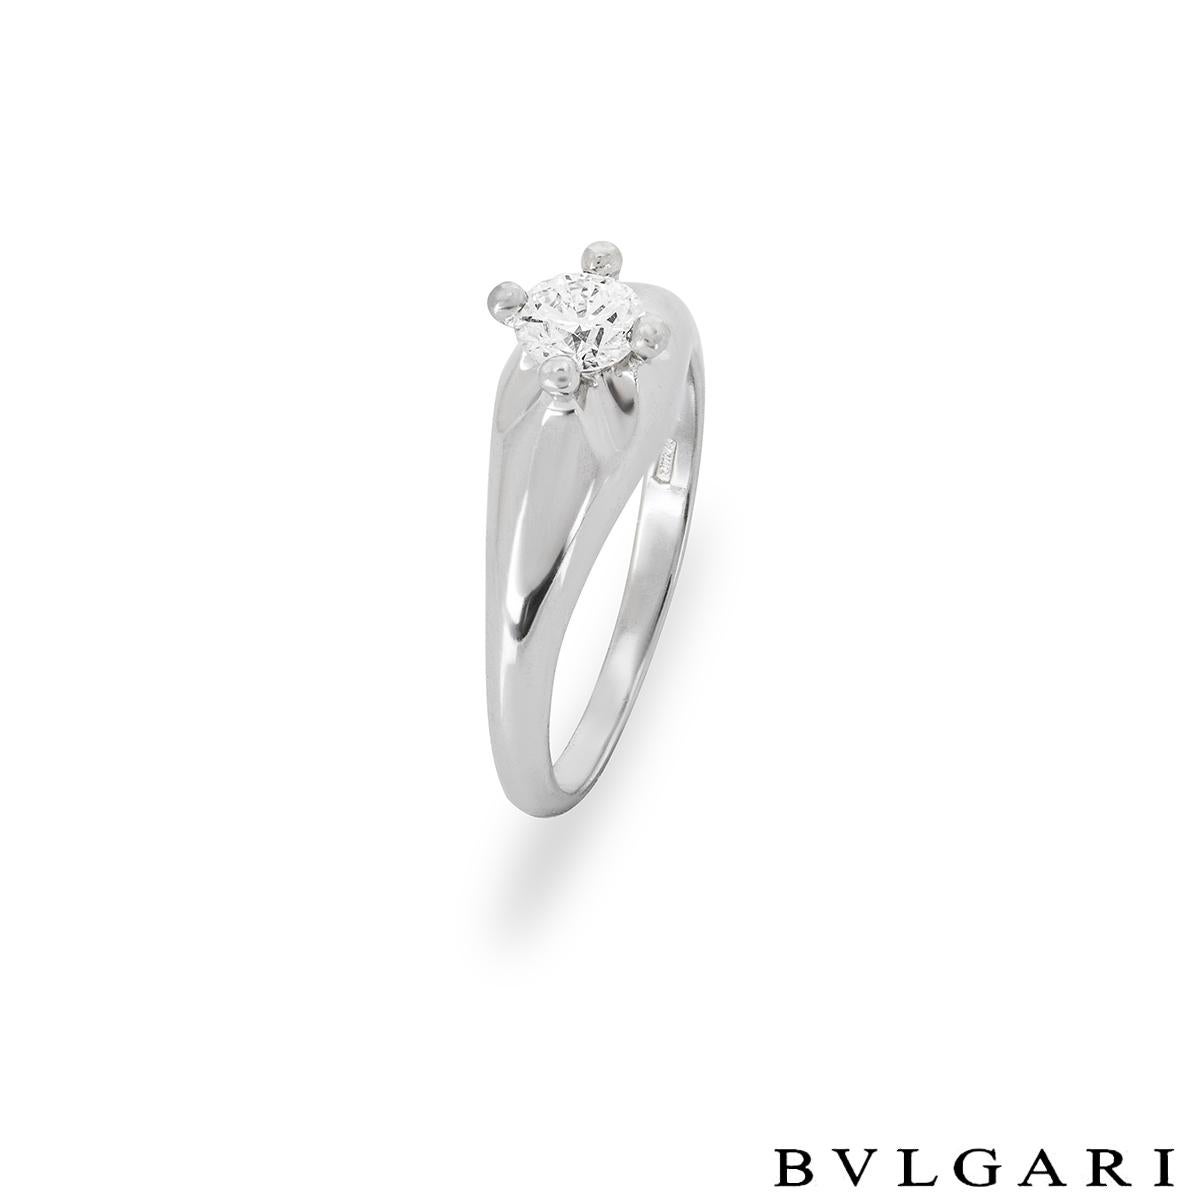 Une superbe bague en platine et diamant de Bvlgari de la collection Corona. La bague est sertie au centre d'une monture surélevée à quatre griffes avec un diamant rond de taille brillant pesant 0,33ct, de couleur D et de pureté VVS2. La bague